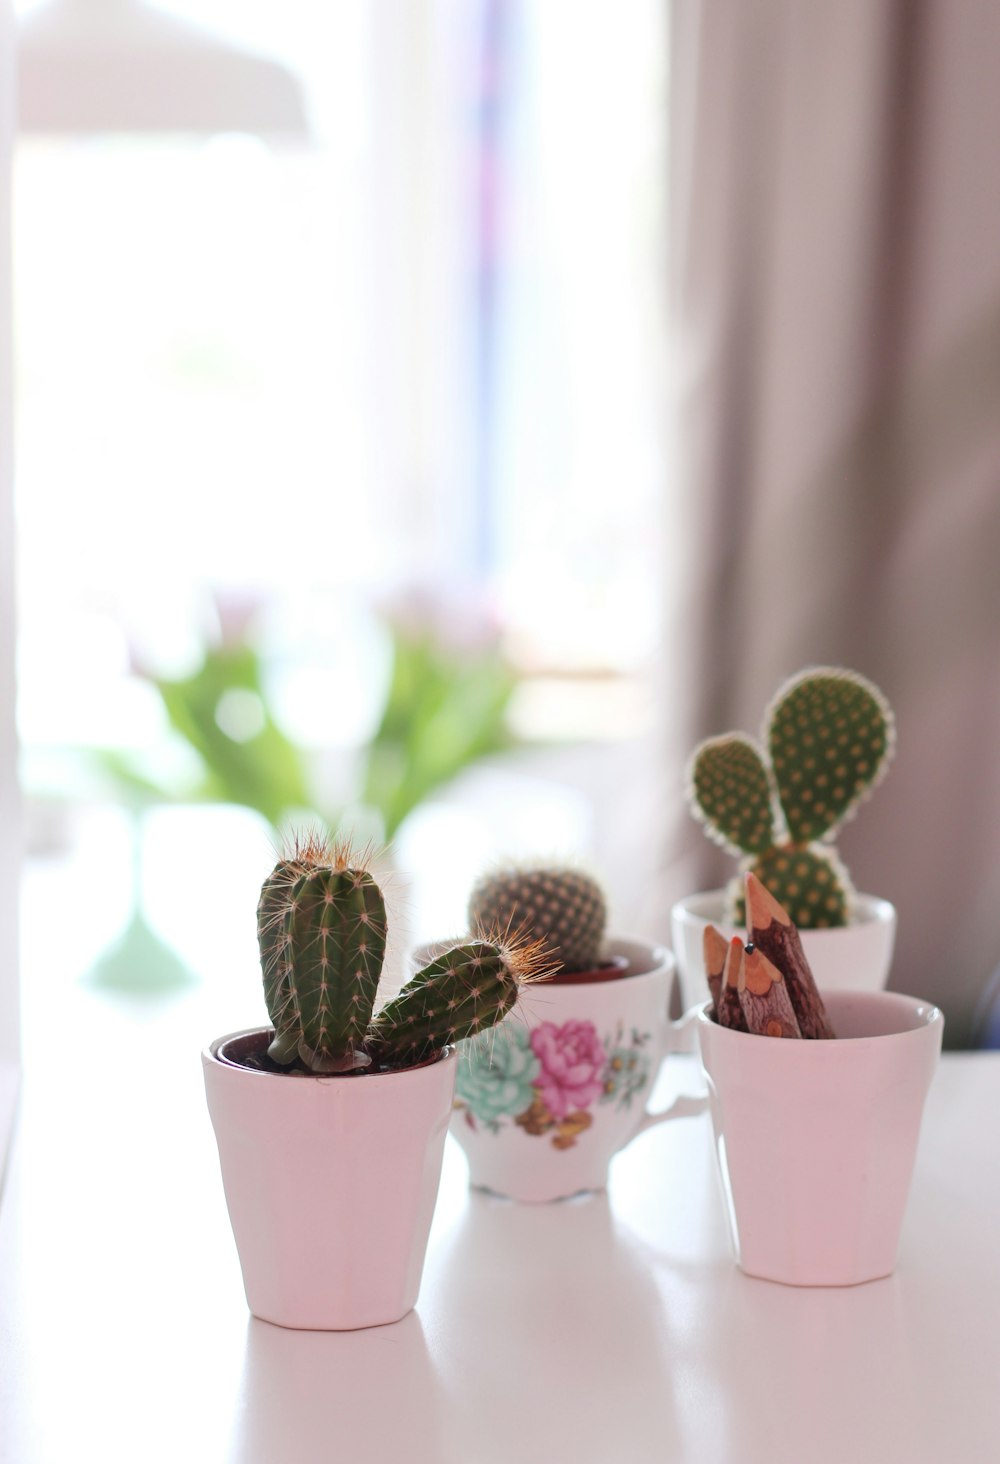 three cactus plants